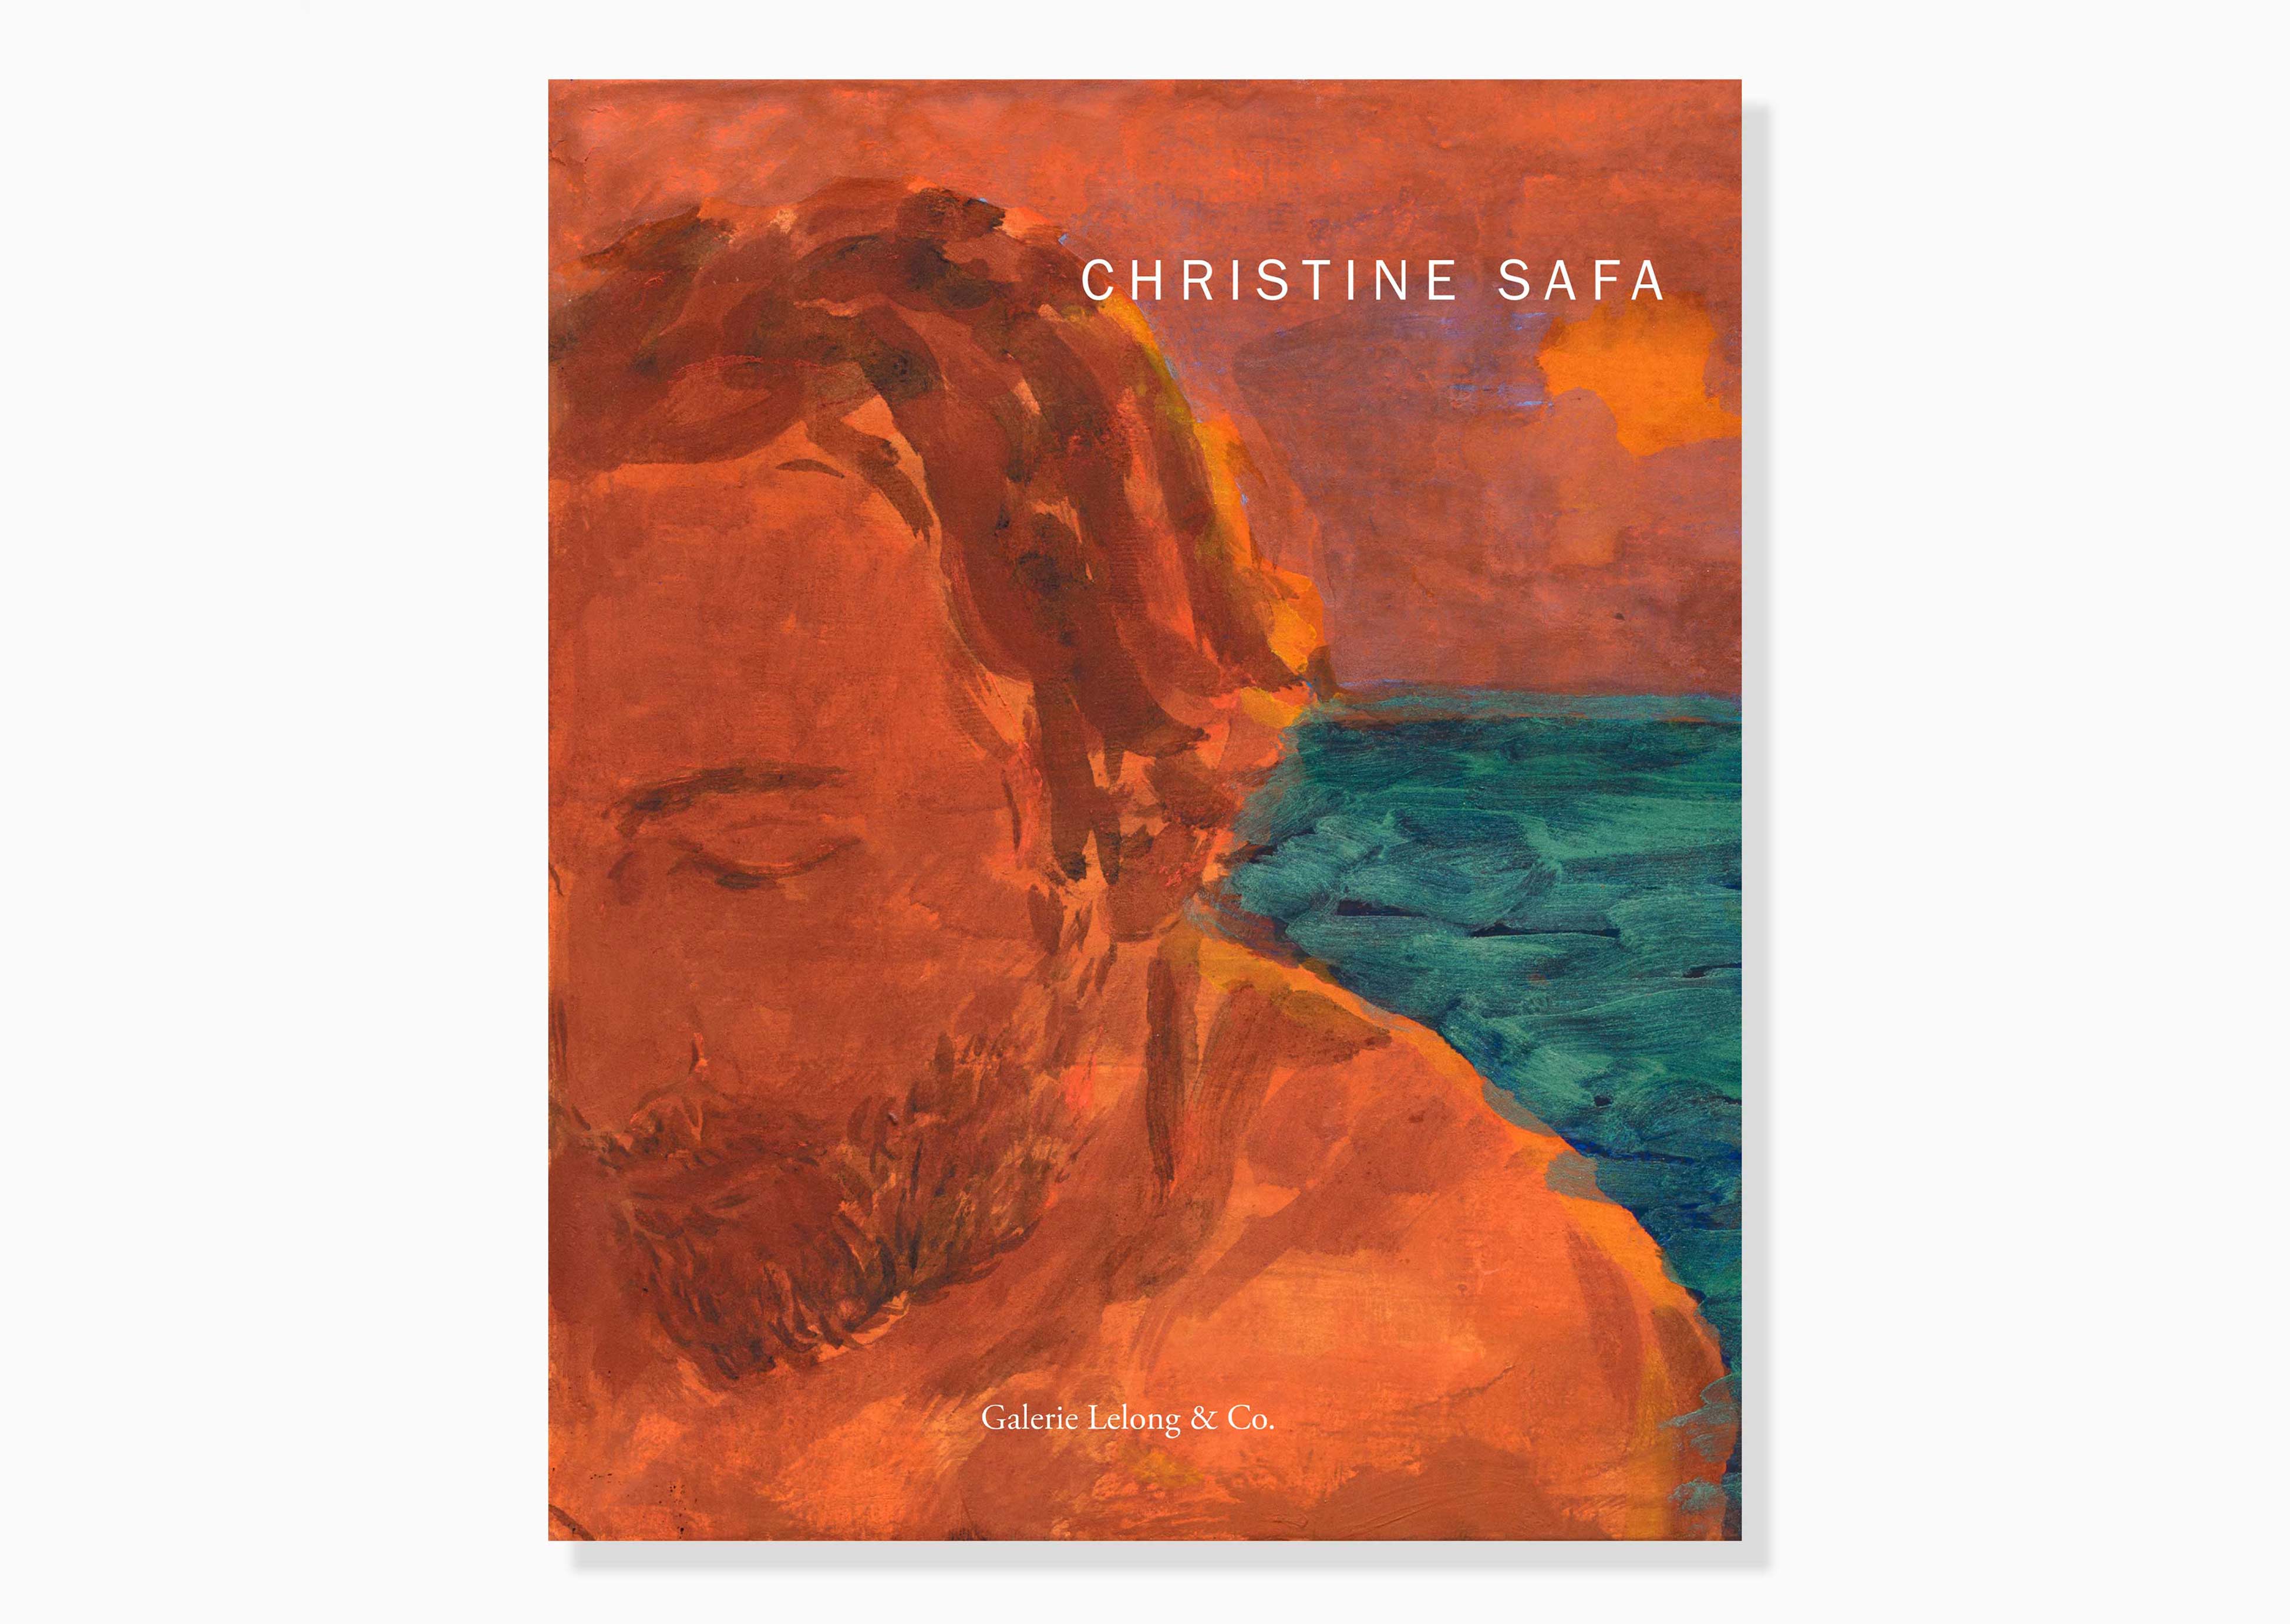 livre Christine Safa Christine Safa